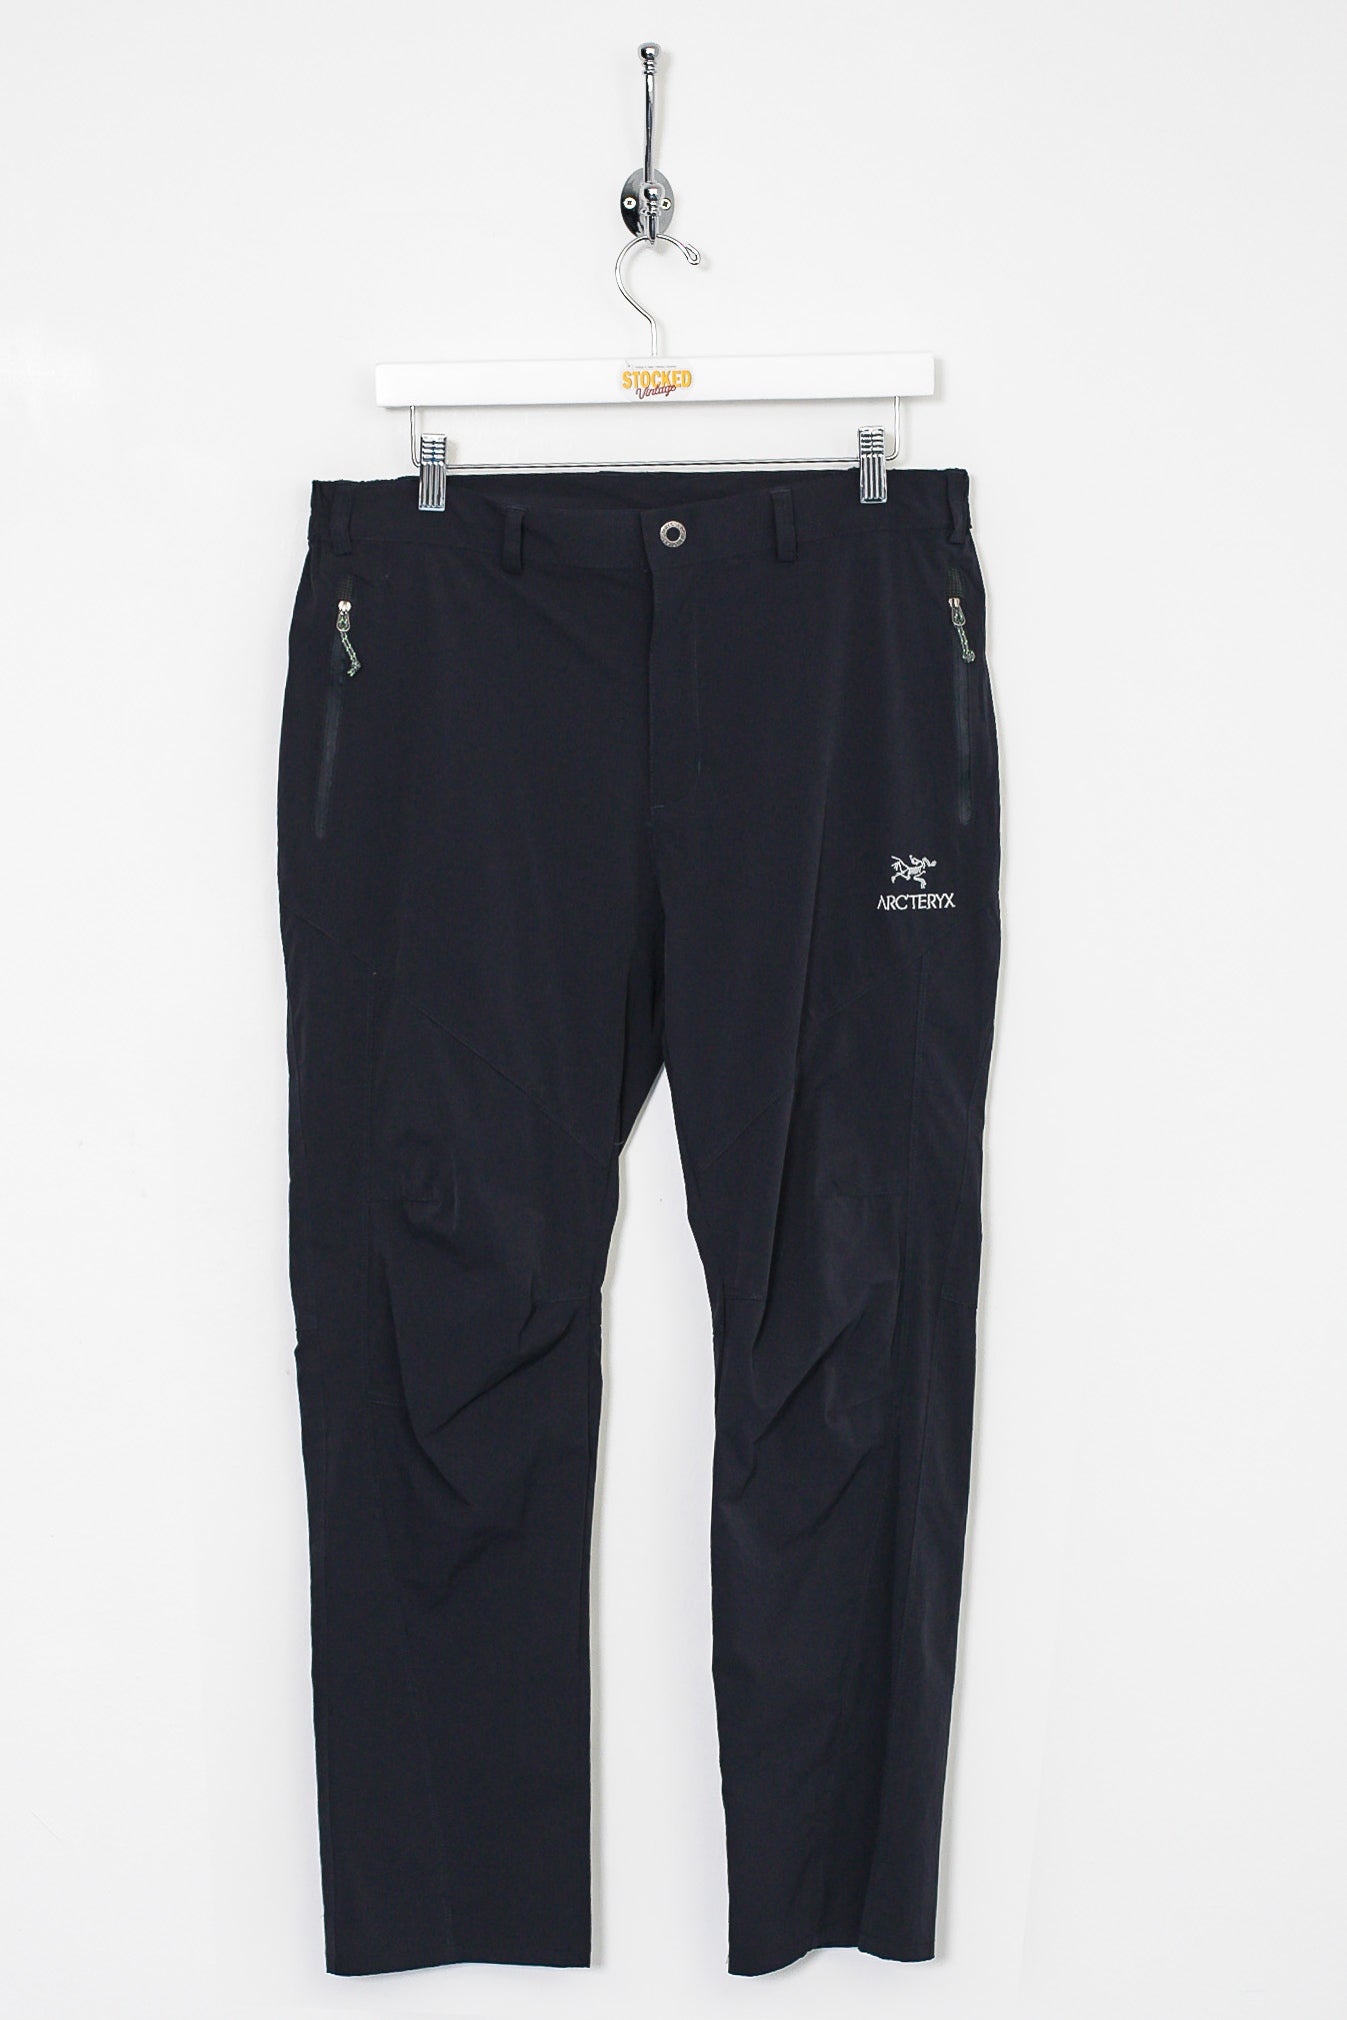 Nike ACG Softshell Pants (2000s) – VILIS VINTAGE